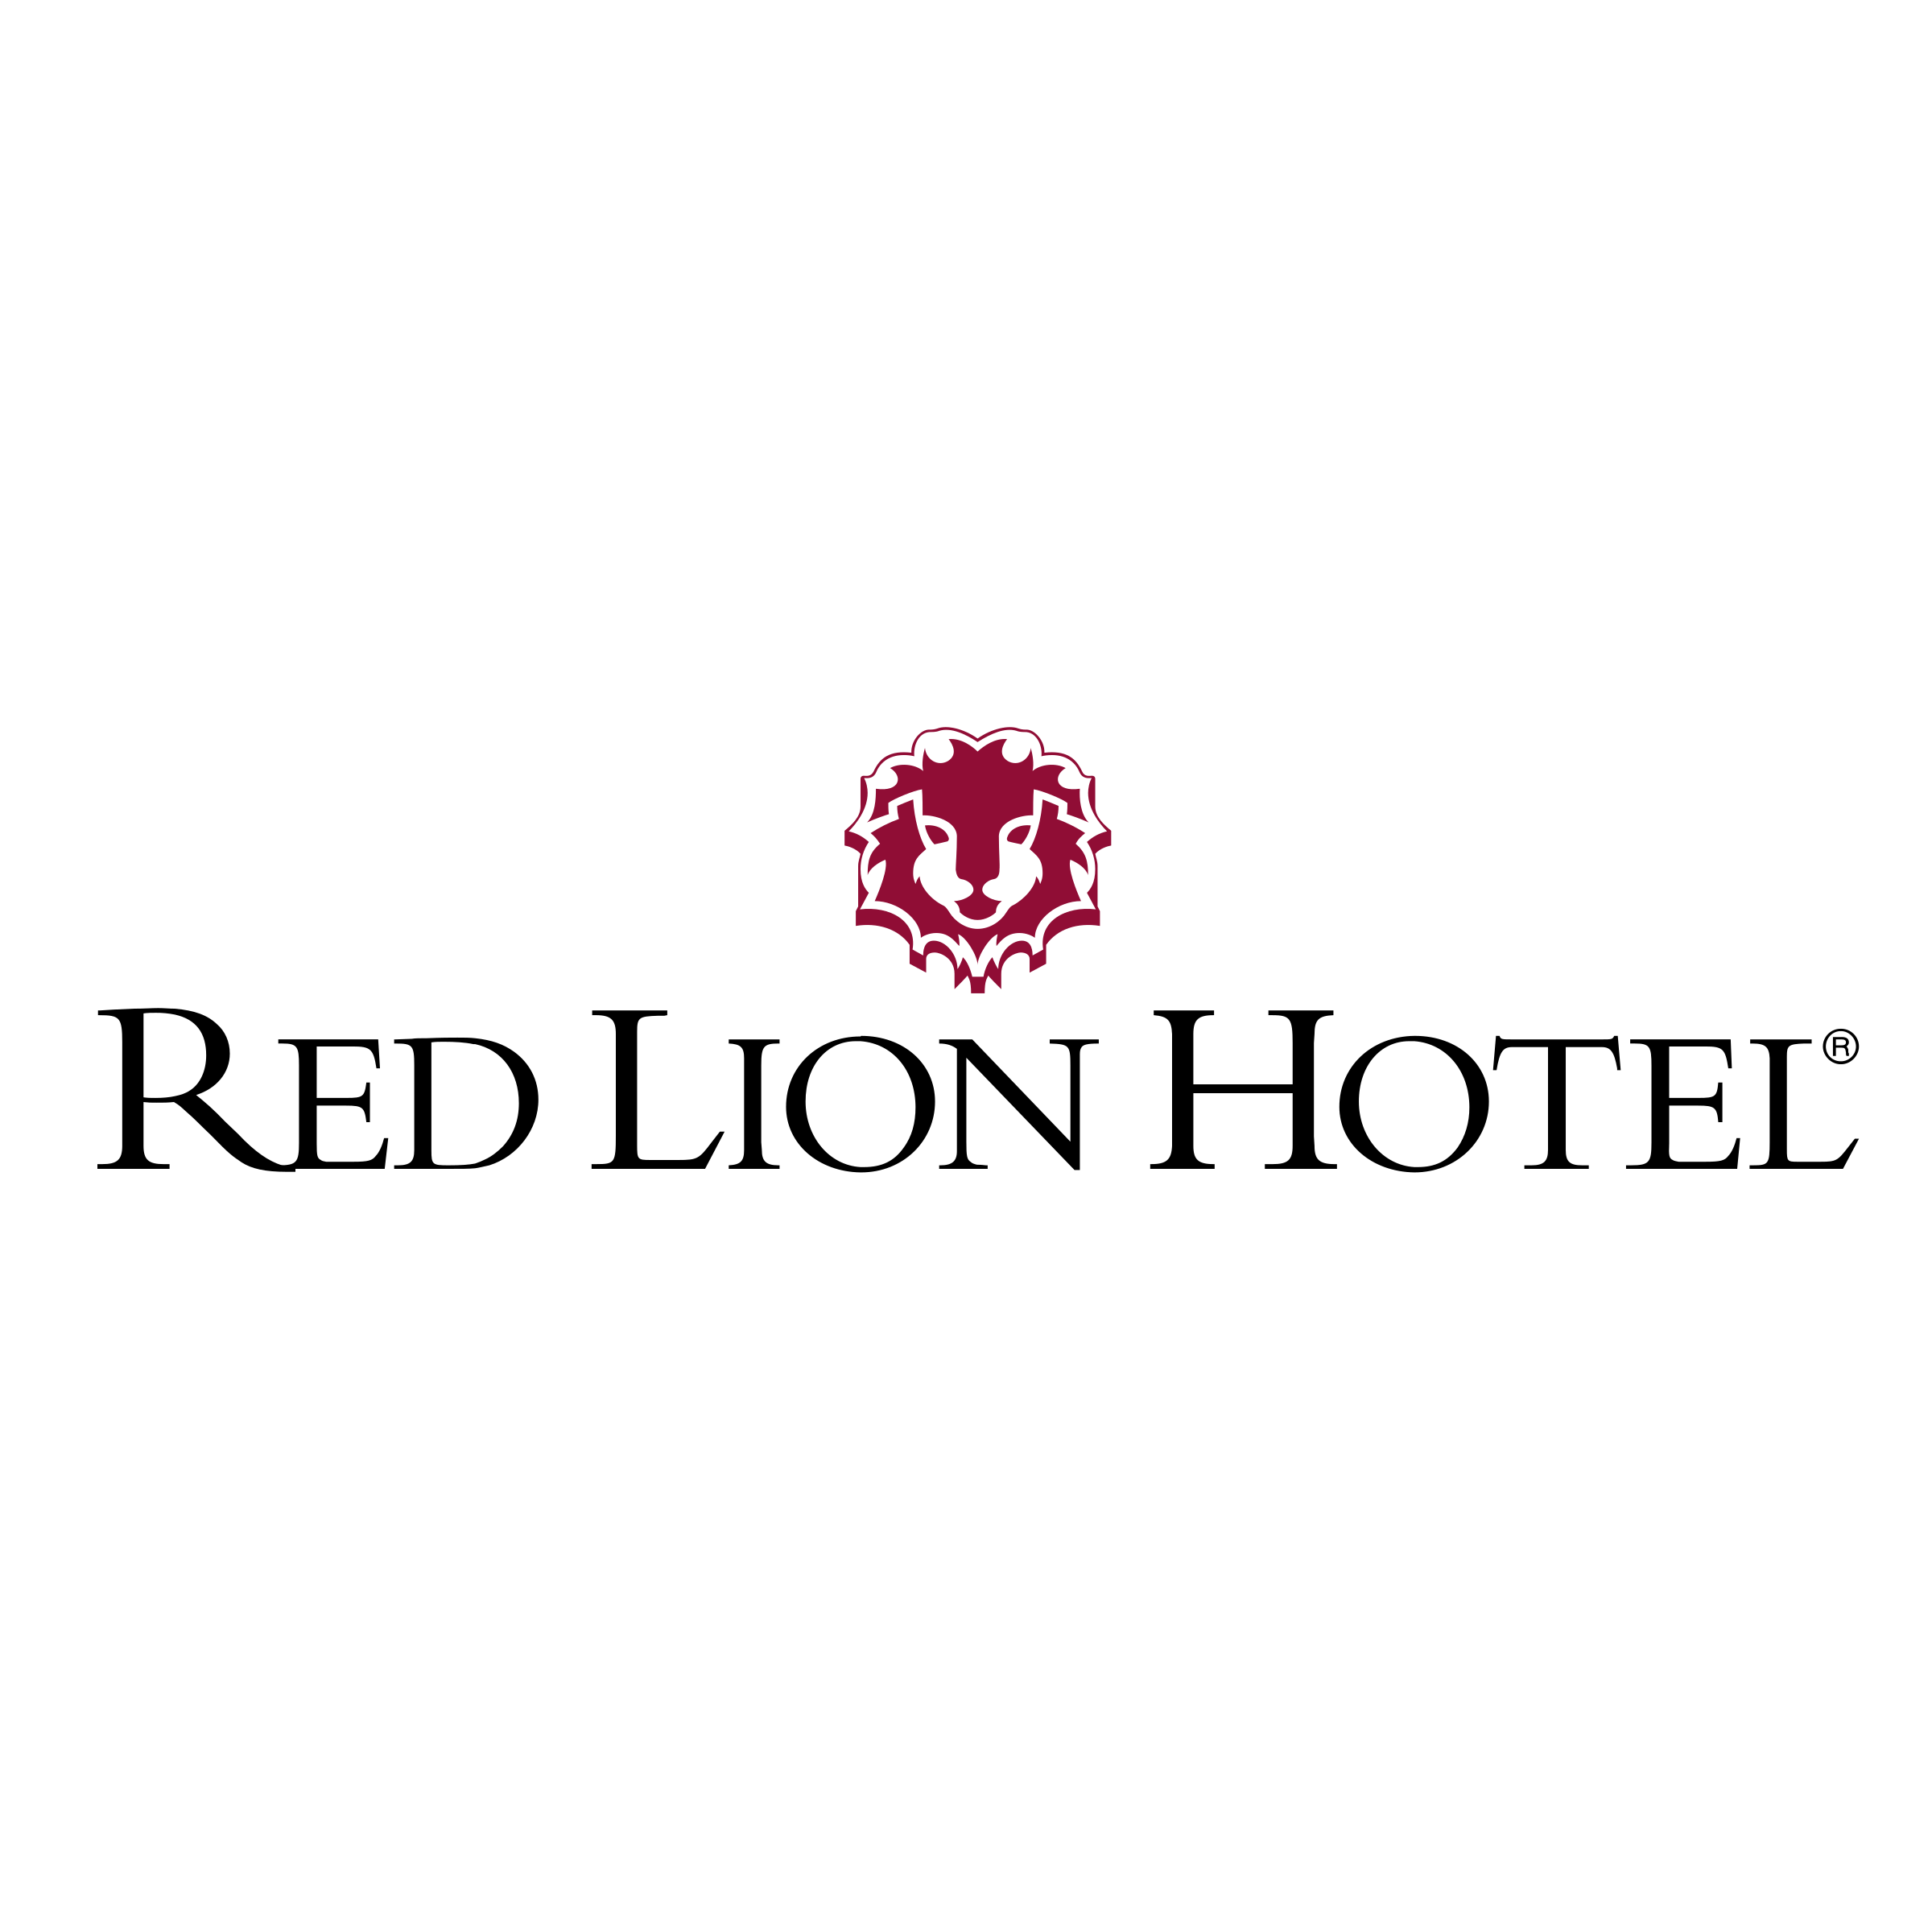 Lion Hotel Logo - Red Lion Hotel Logo PNG Transparent & SVG Vector - Freebie Supply